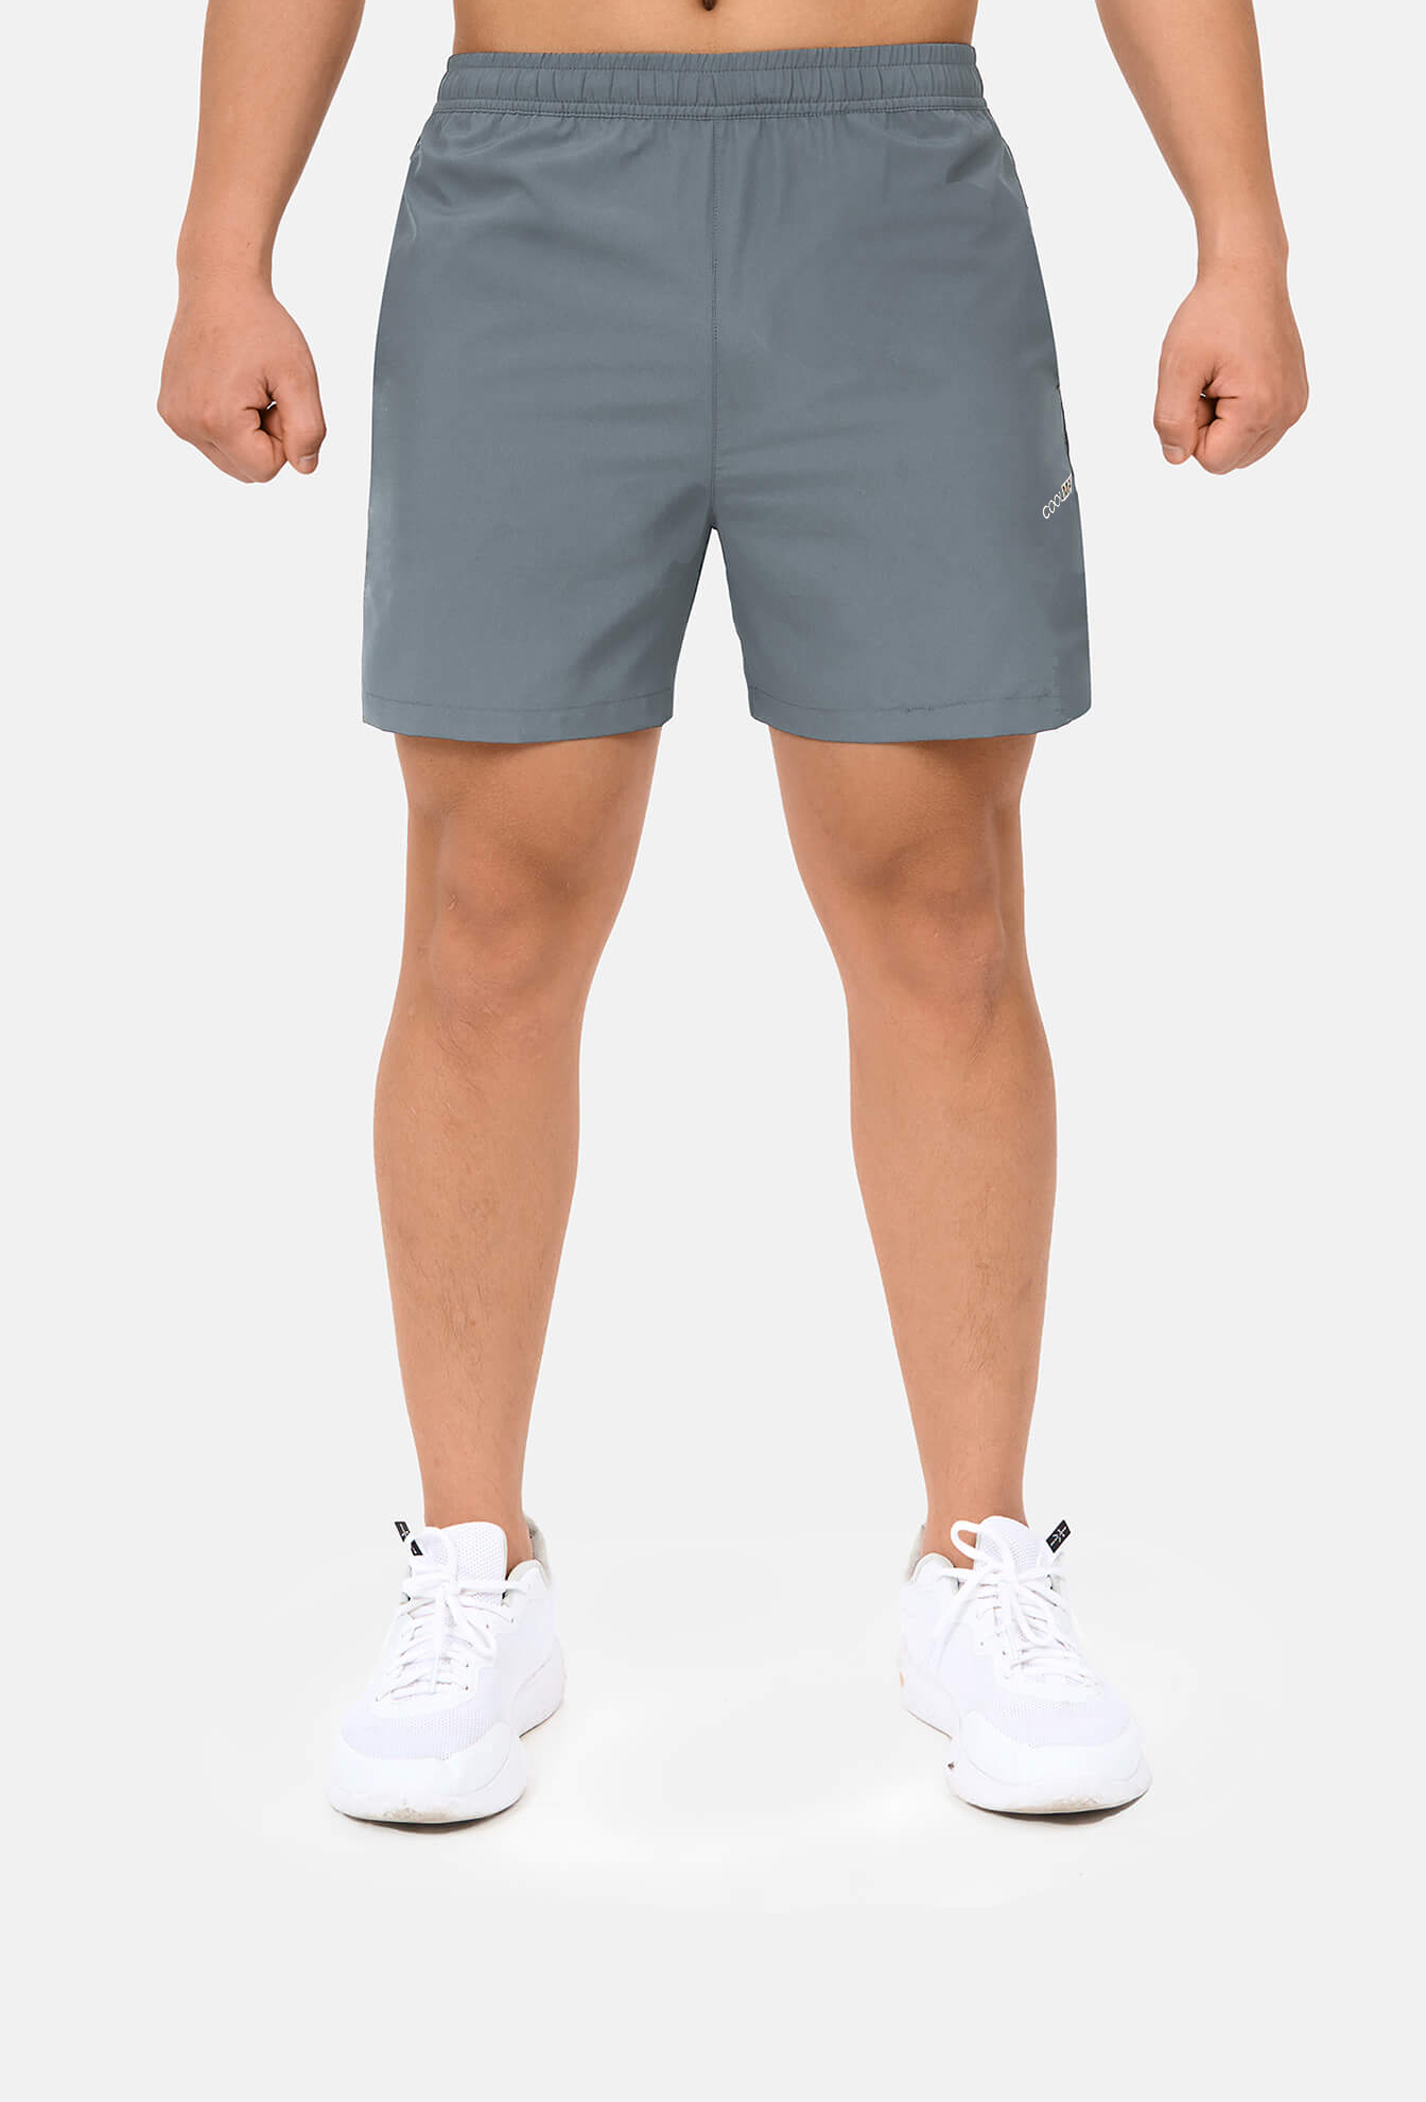 Quần shorts nam thể thao 5" xẻ gấu cao (túi sau có khóa kéo) 